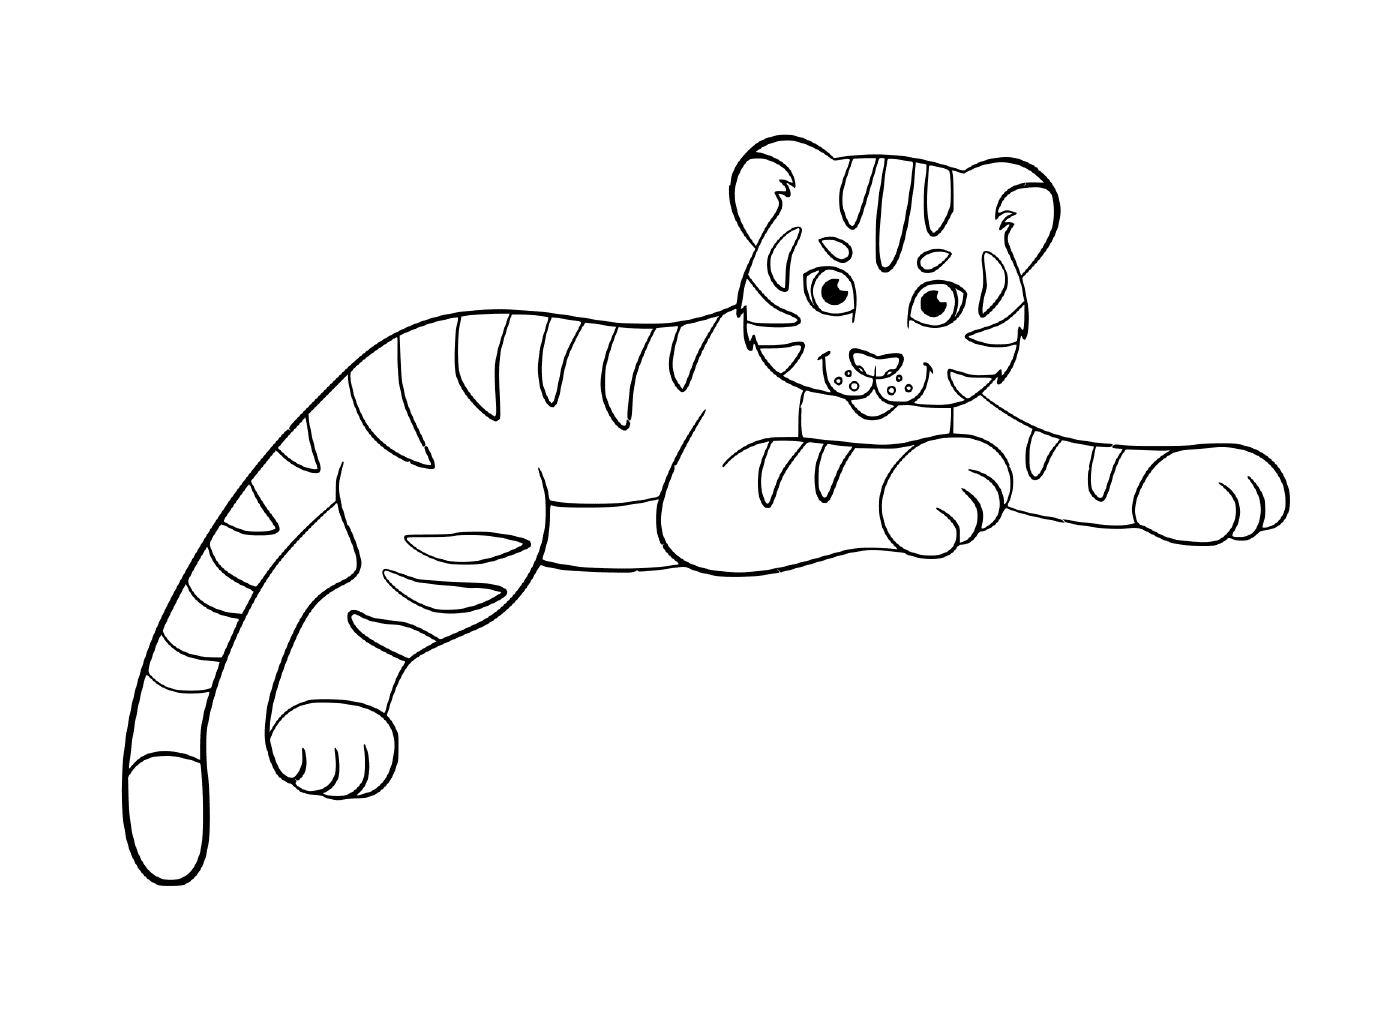  Bebê bonito do tigre de uma criança 